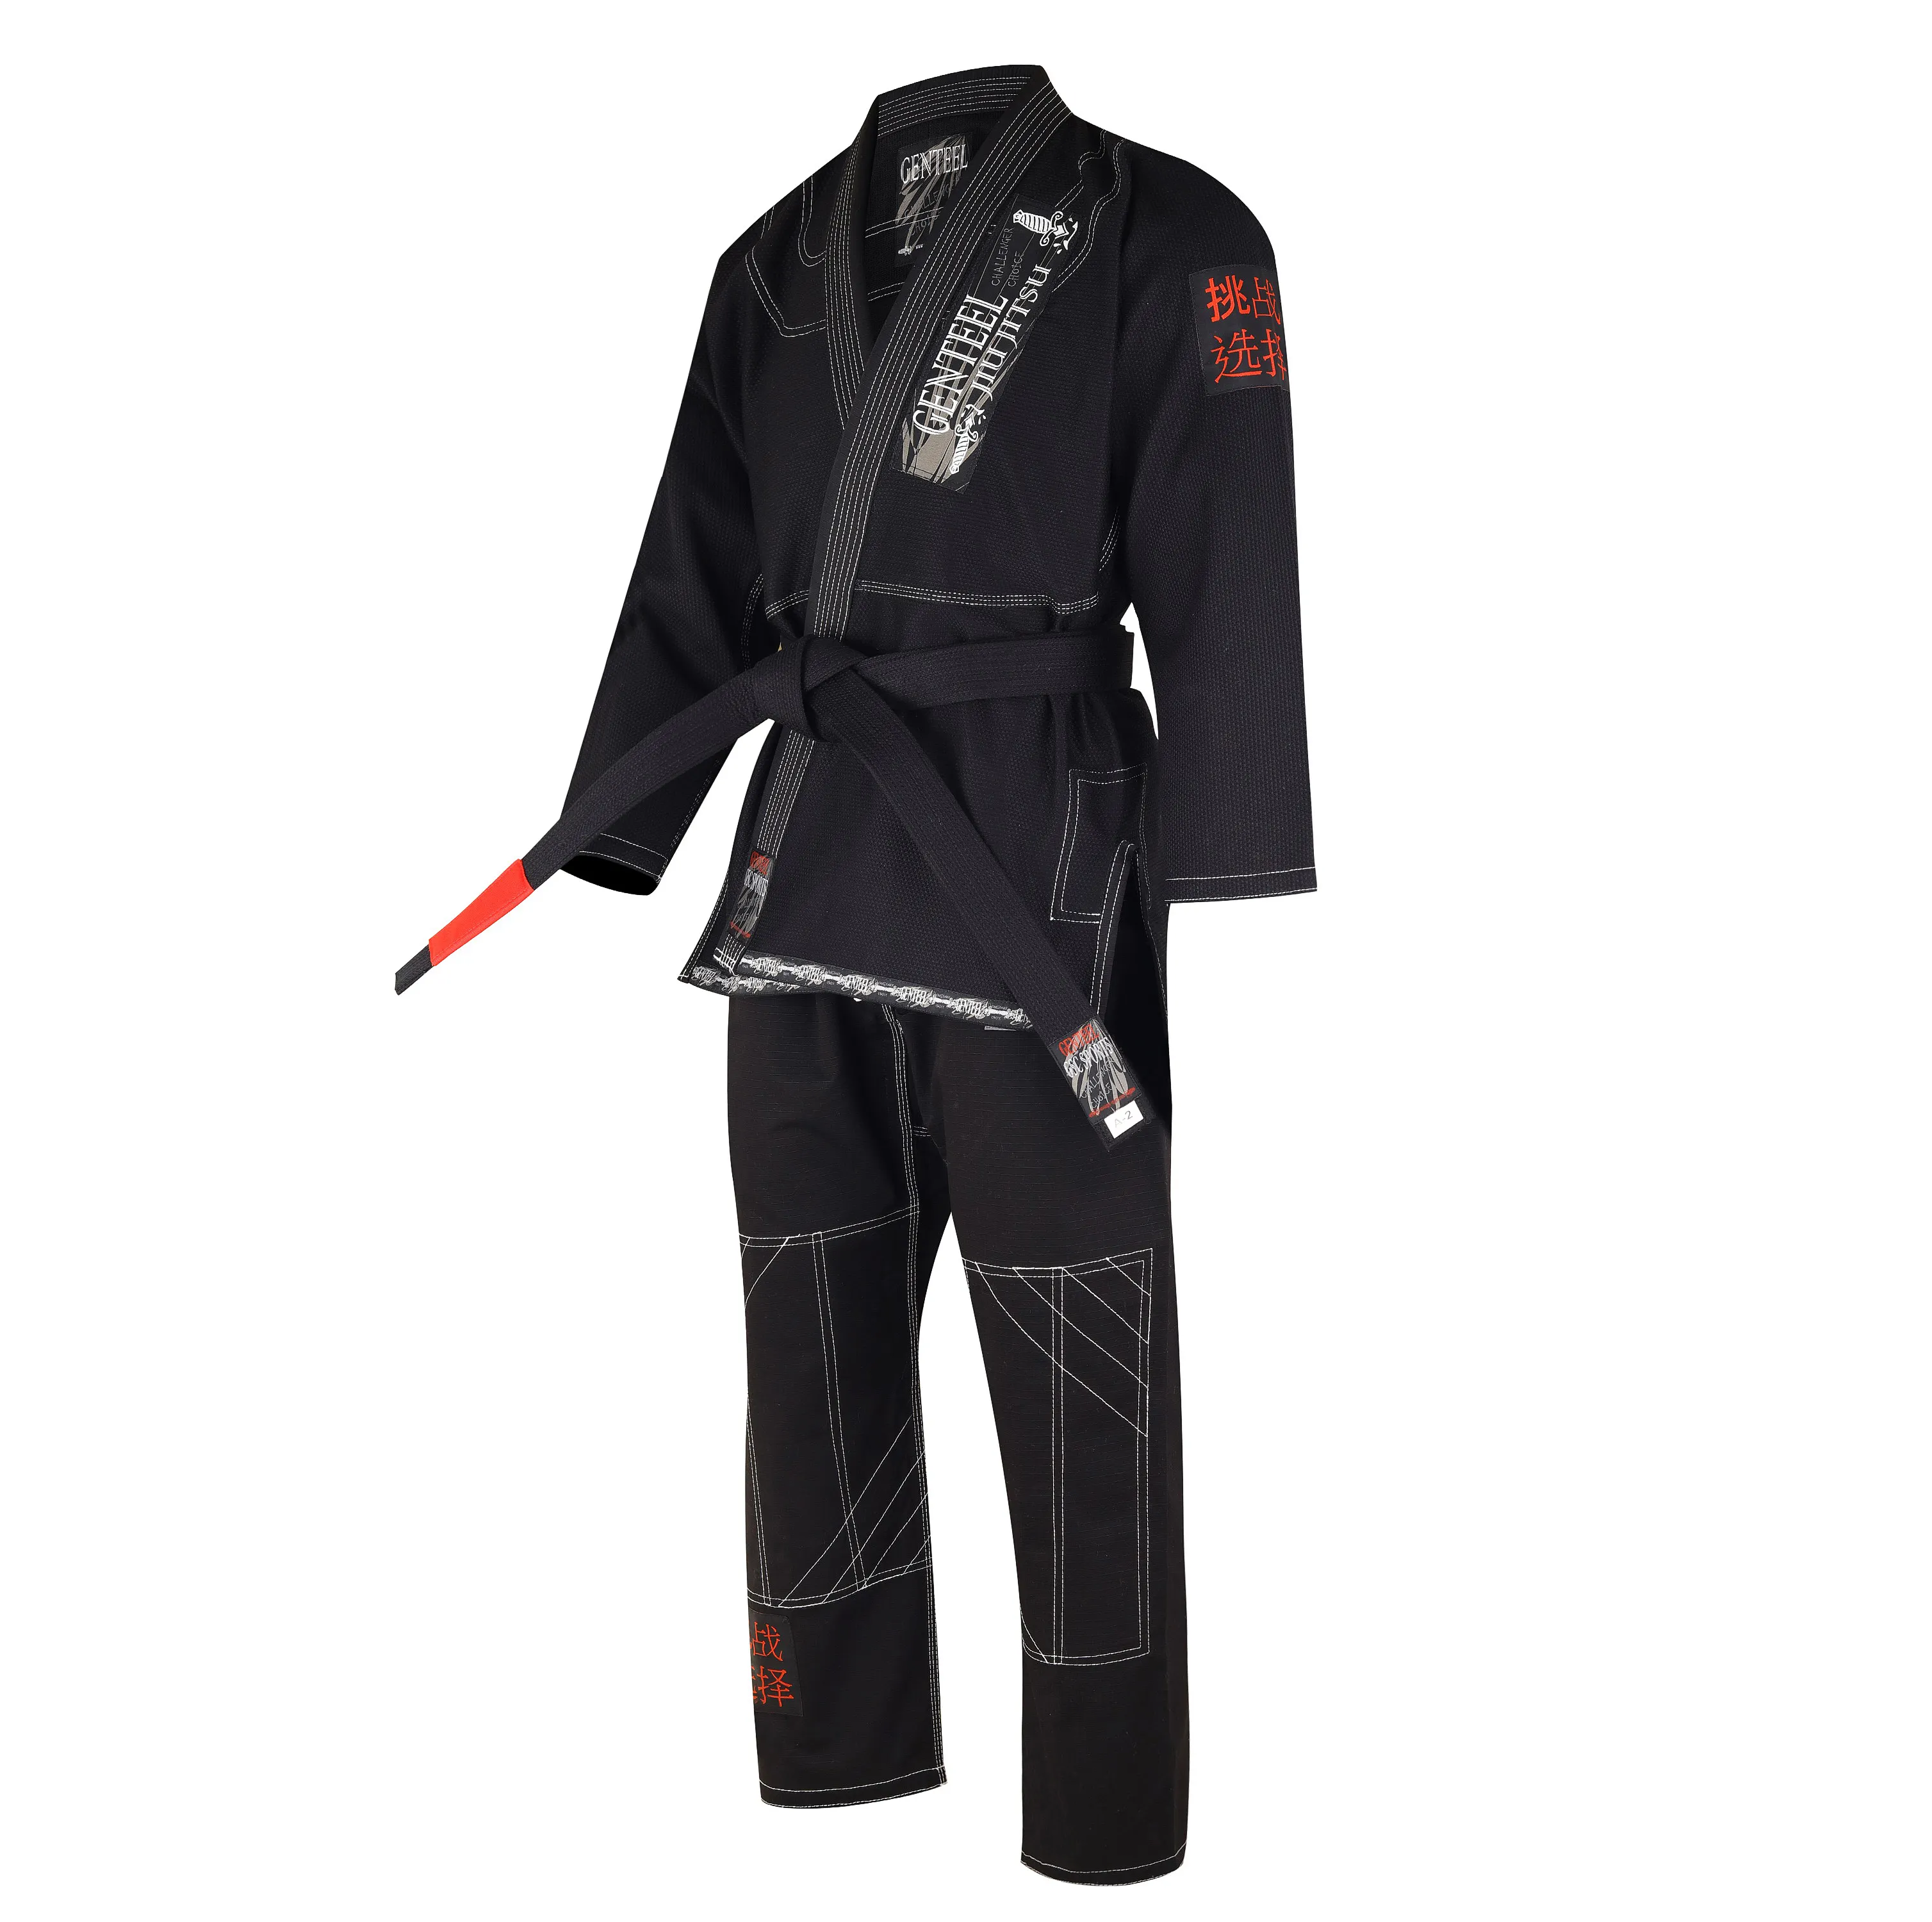 Imono-Jiu Jitsu 100% algodón, tejido Pearl weave 450 GSM, diseño de alta calidad y logotipos de marca de calidad superior